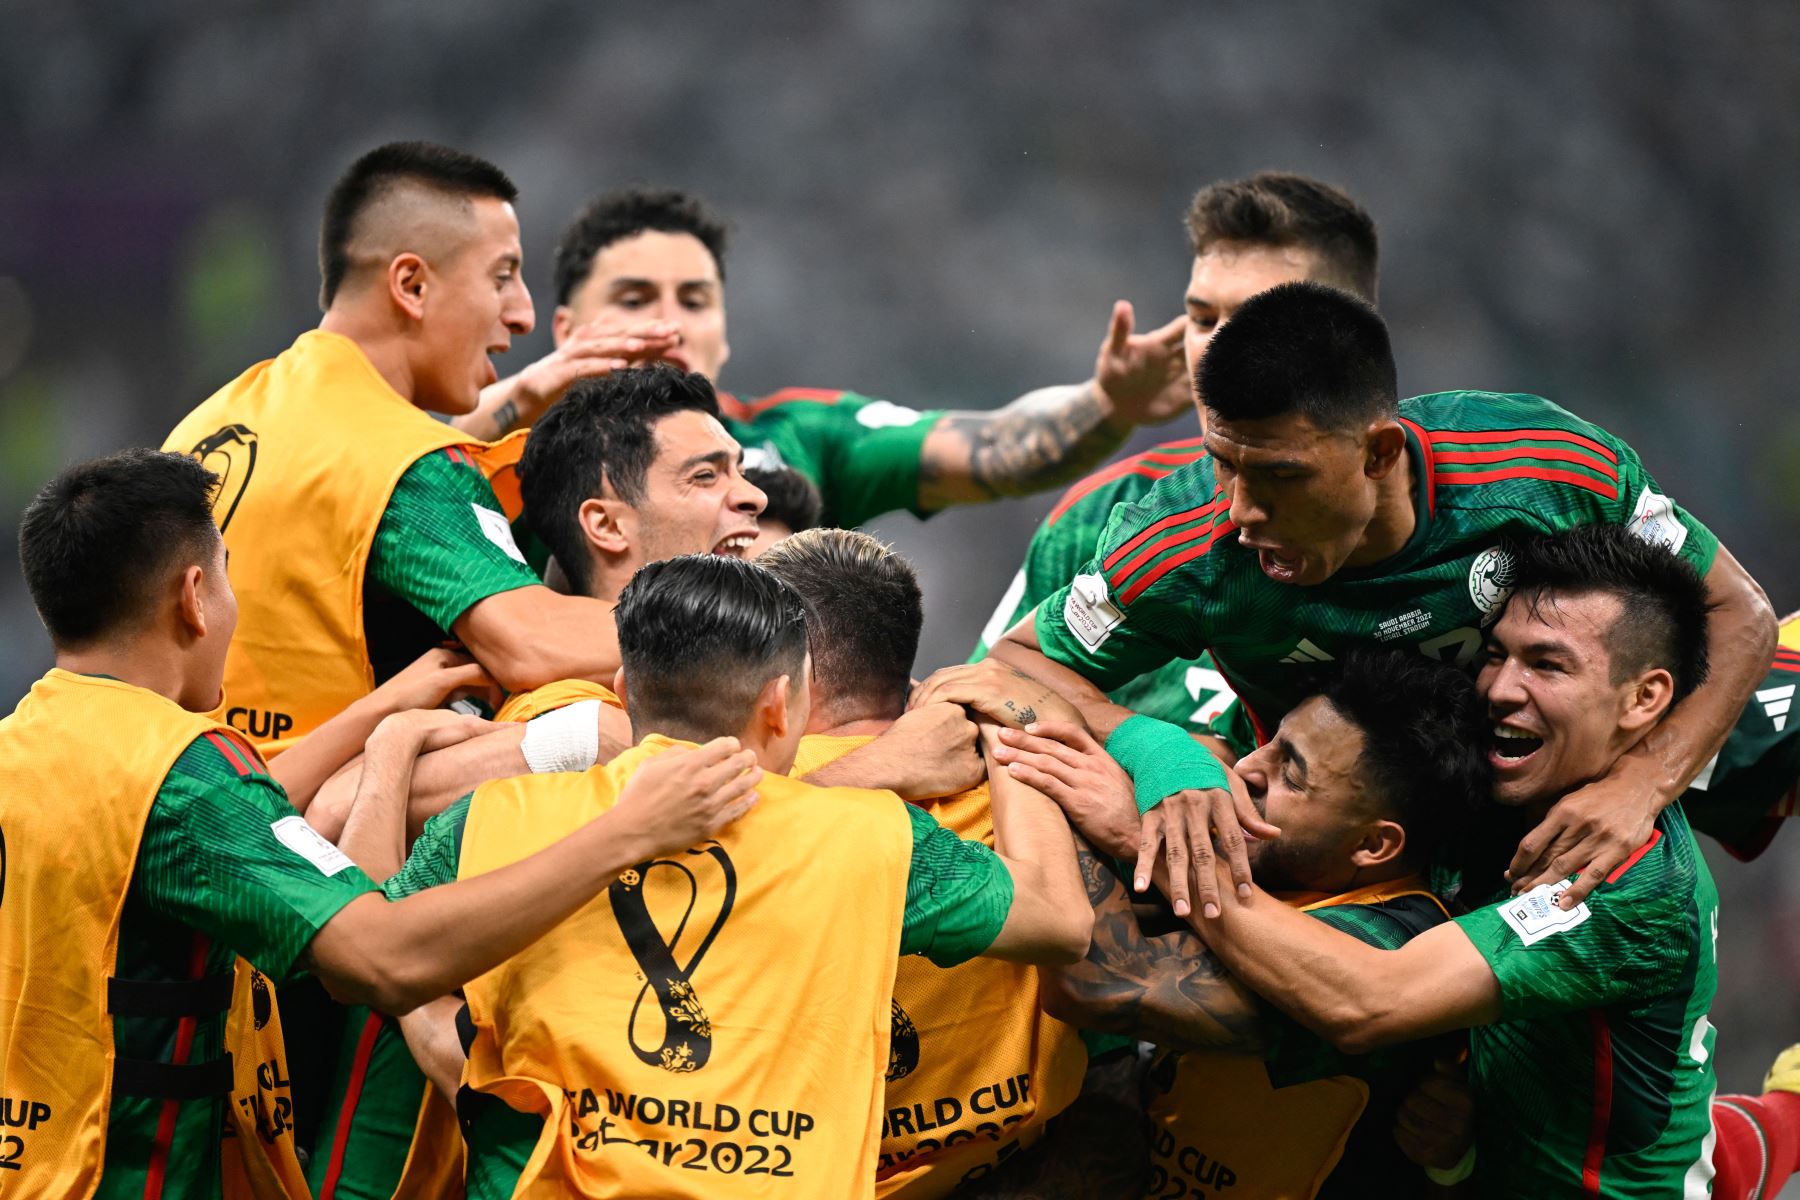 Los jugadores de México celebran después de que el mediocampista mexicano  Luis Chávez anotó el segundo gol de su equipo durante el partido de fútbol del Grupo C de la Copa Mundial Catar 2022 entre Arabia Saudita y México en el Estadio Lusail en Lusail, al norte de Doha el 30 de noviembre de 2022. Foto: AFP